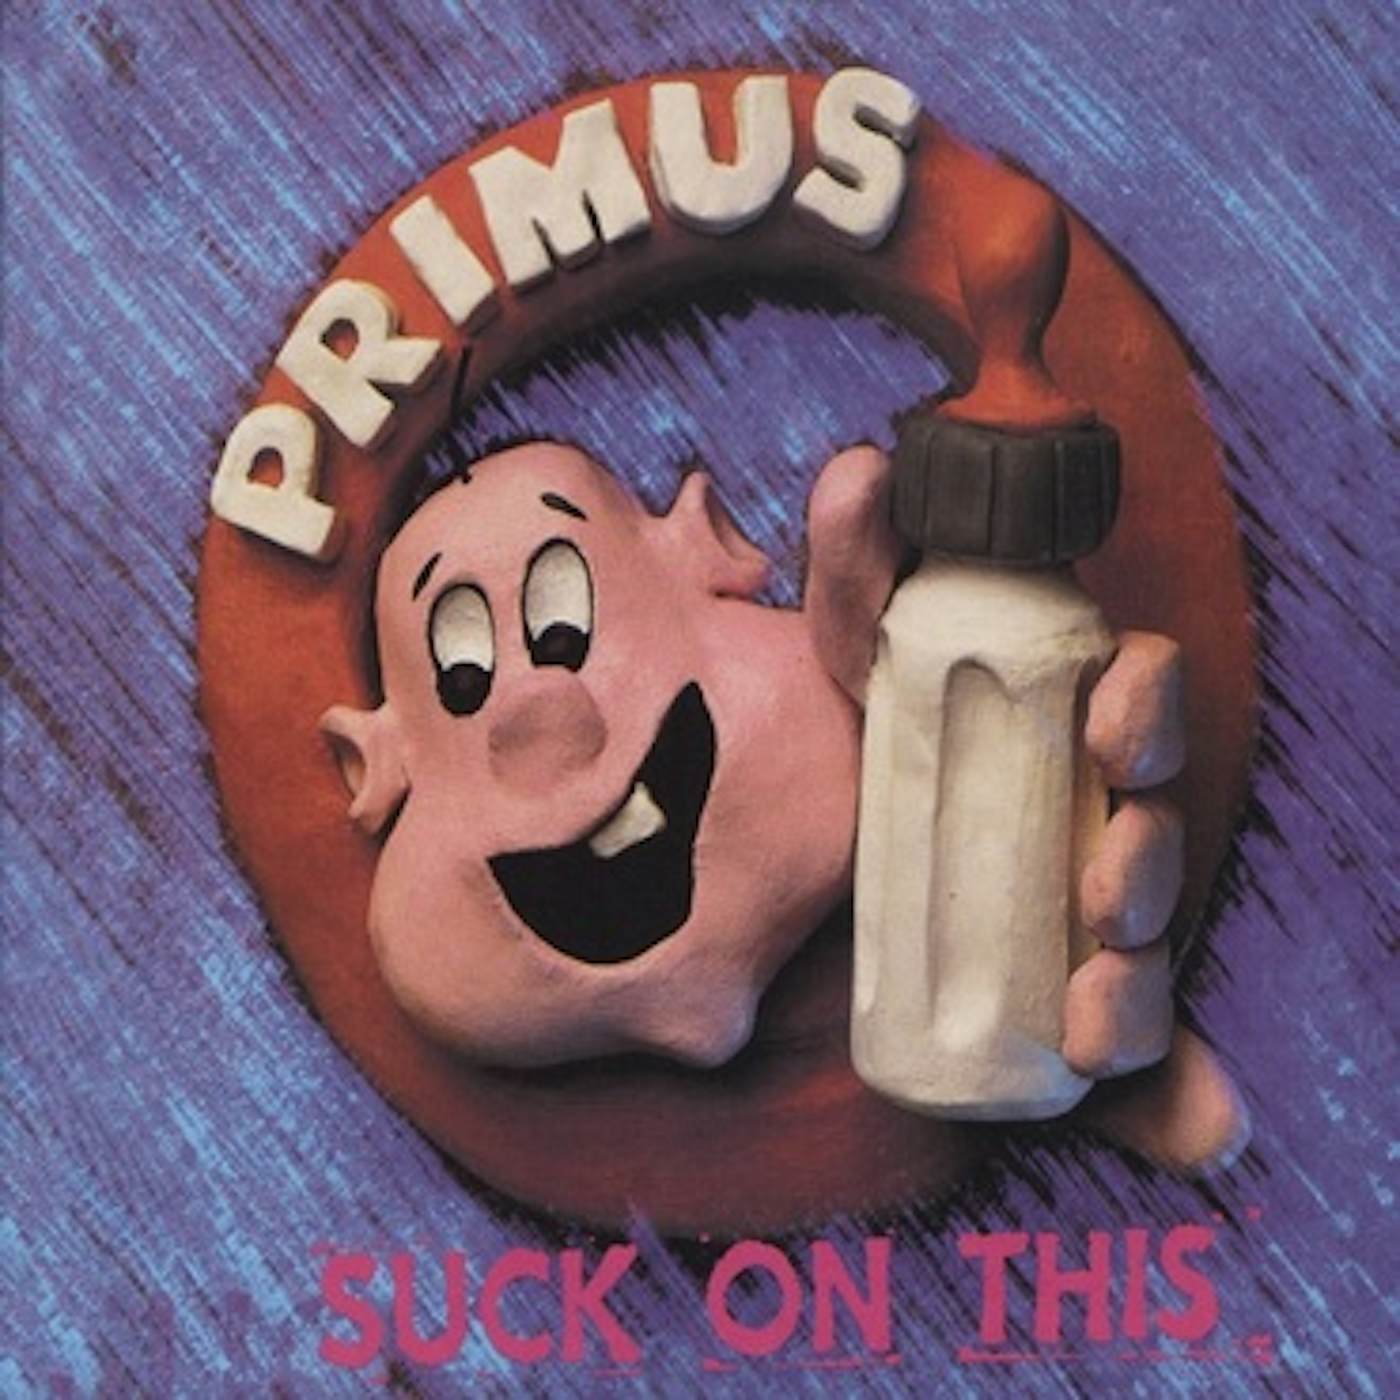 Primus Suck On This Vinyl Record